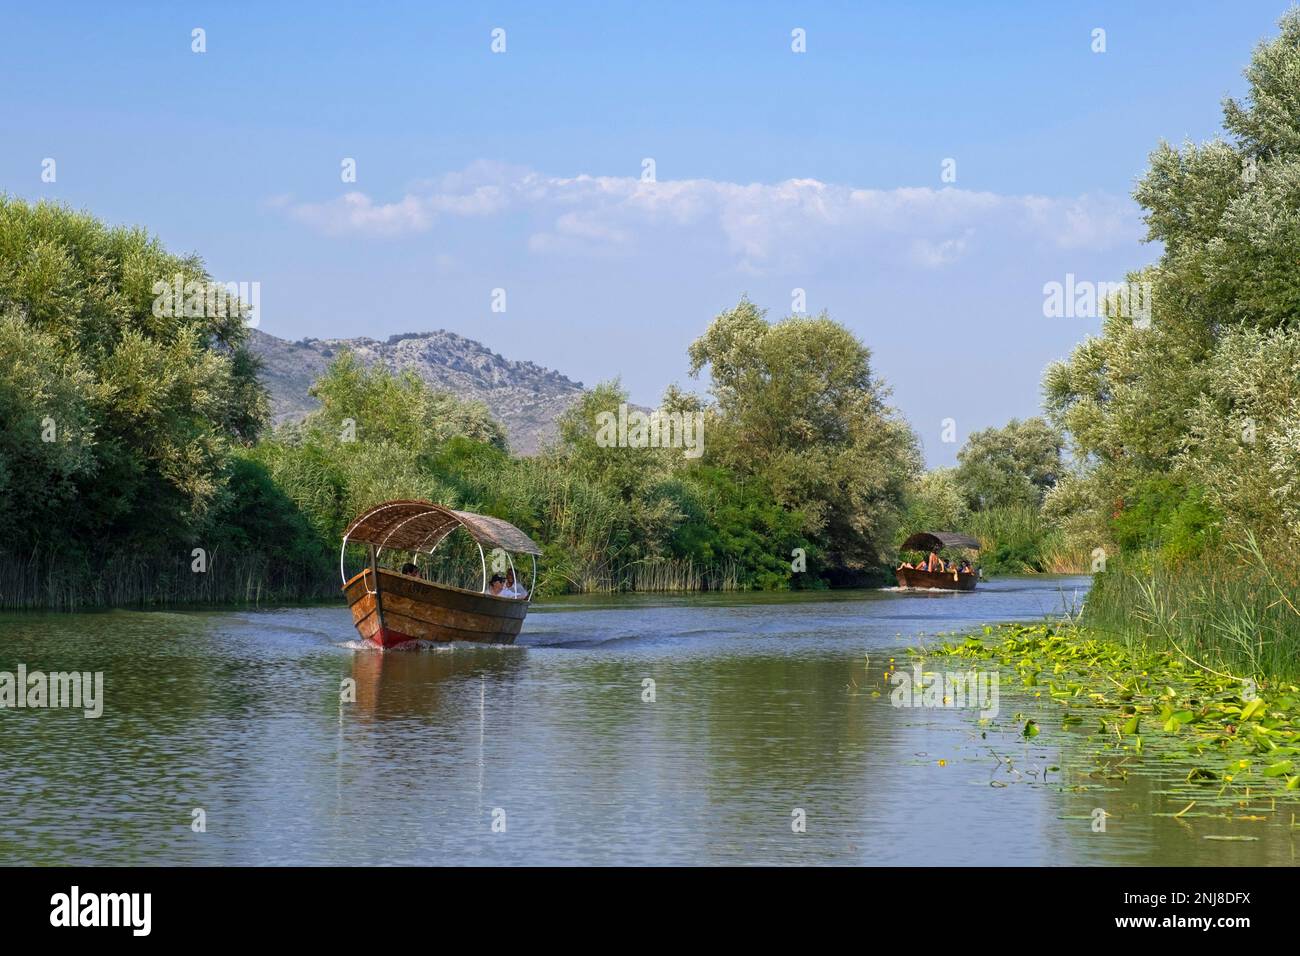 Bateaux touristiques près de Virpazar sur la Crmnica qui coule dans le lac Skadar, parc national Skadarsko Jezero, région de Crmnica, Bar, Monténégro Banque D'Images